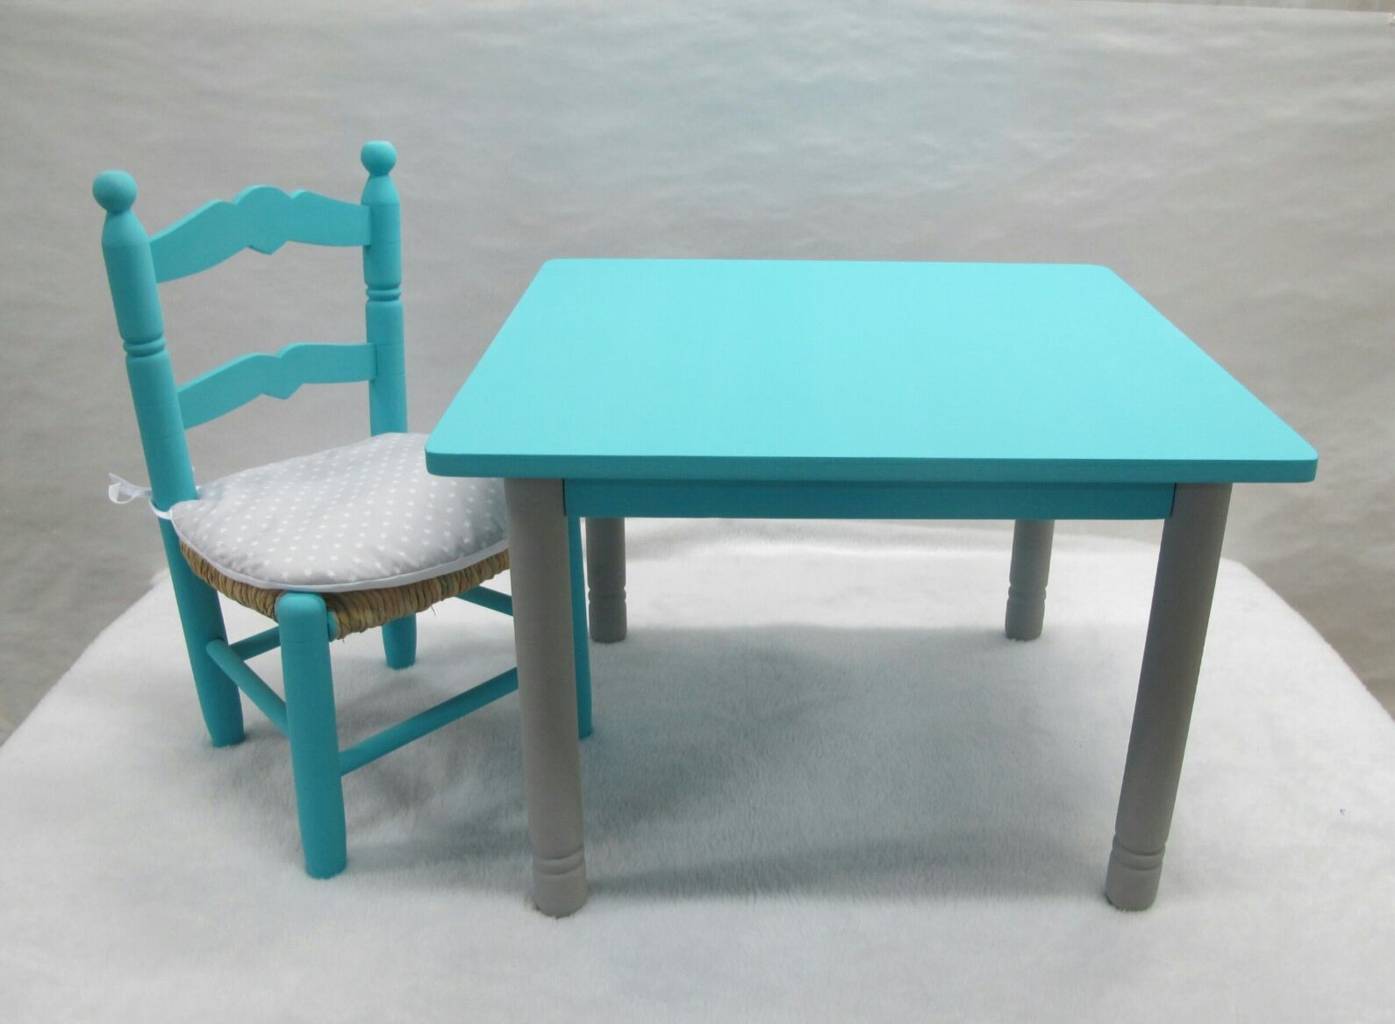 Mesa infantil, mesa blanca para jugar, artesanía y pintura en la